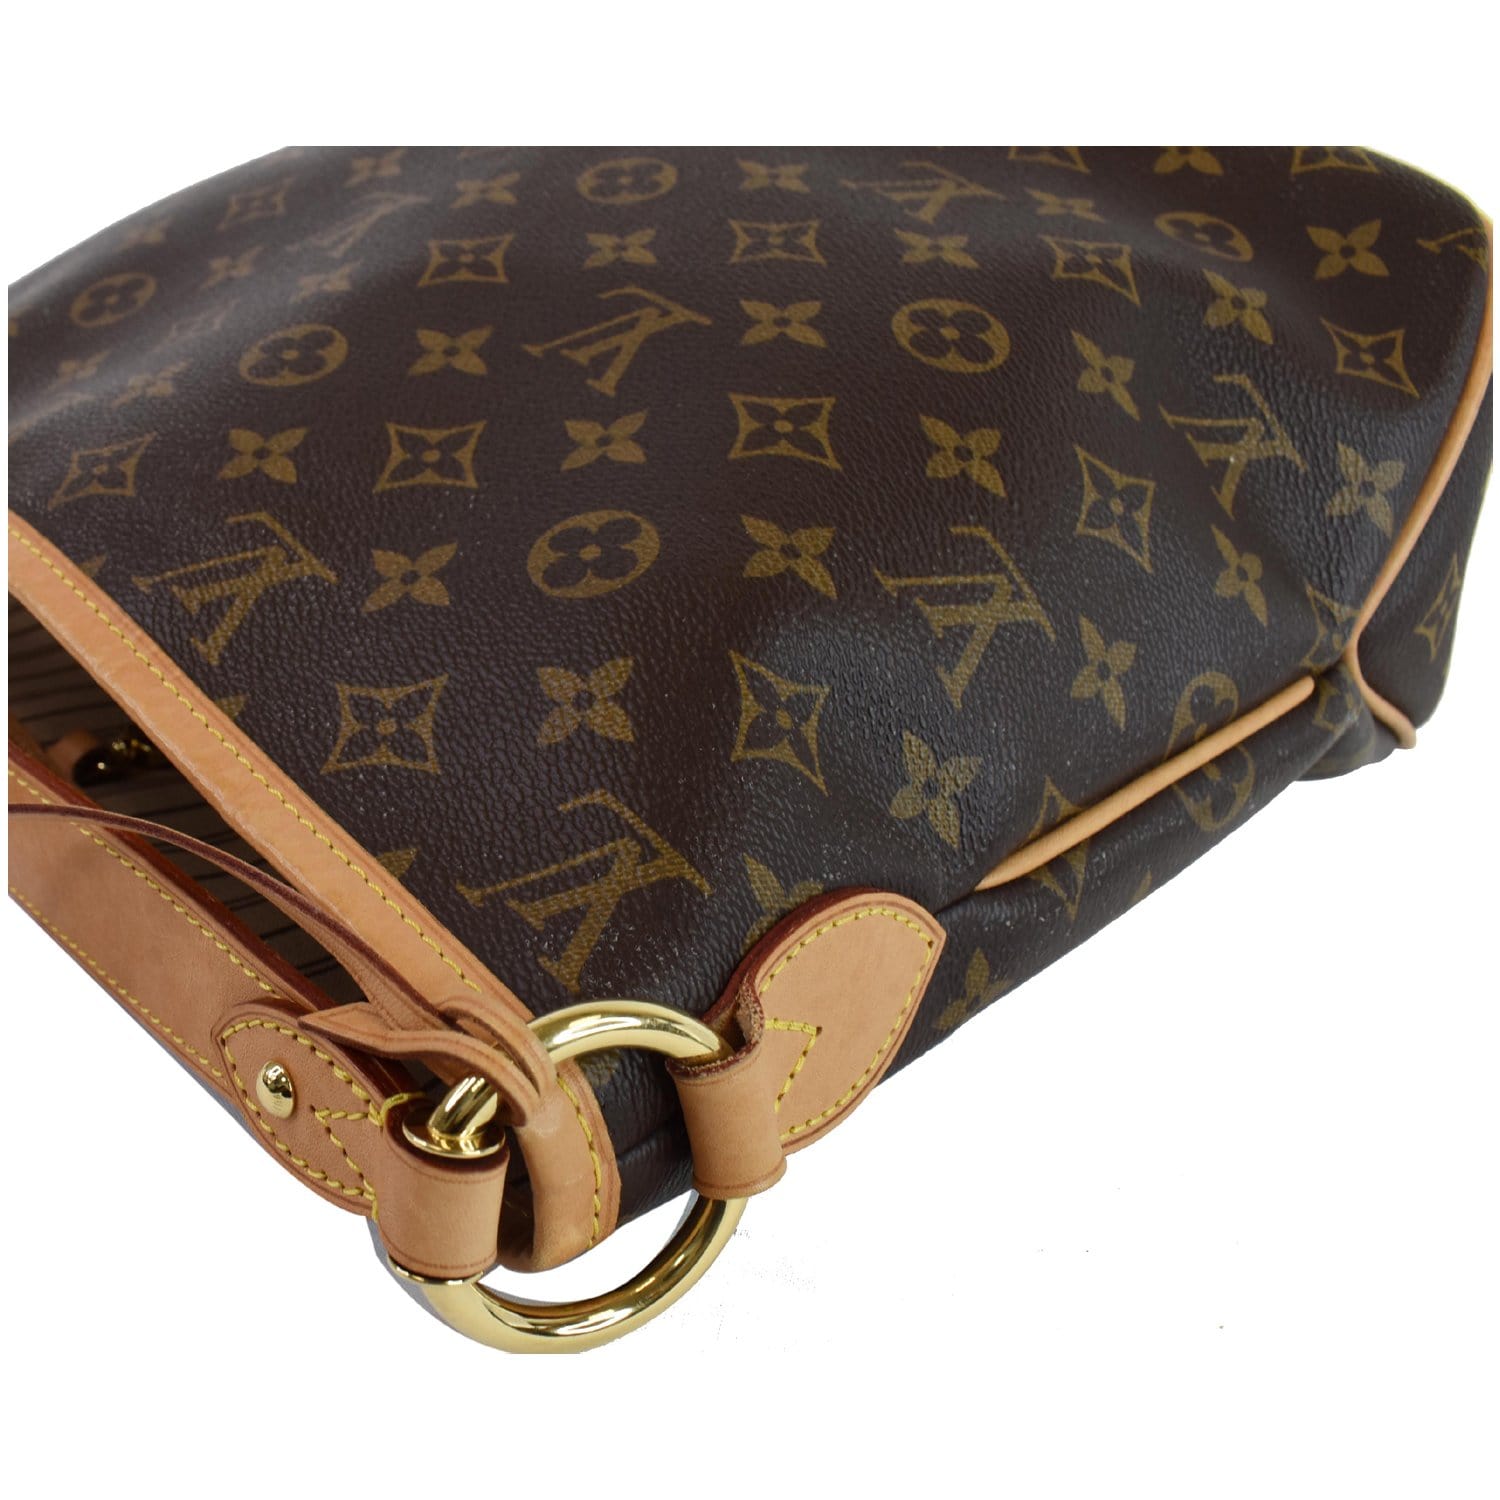 Delightful cloth handbag Louis Vuitton Brown in Cloth - 37652562